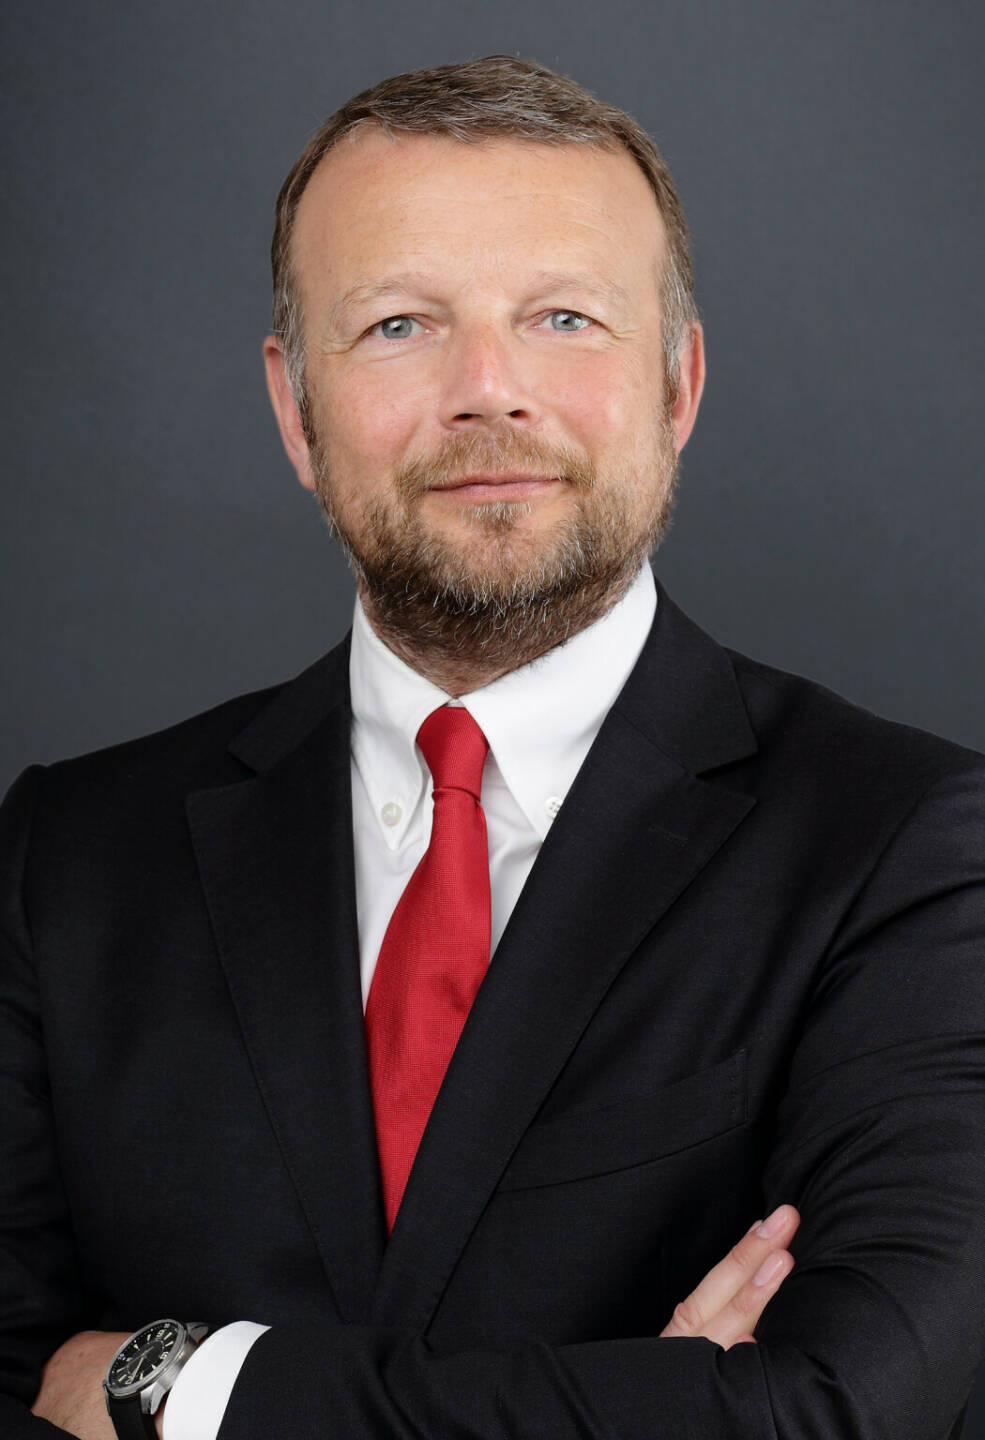 Christian Wiesbauer übernimmt die Leitung für das Firmenkundengeschäft in Oberösterreich und Salzburg der UniCredit Bank Austria, Credit: Unicredit Bank Austria